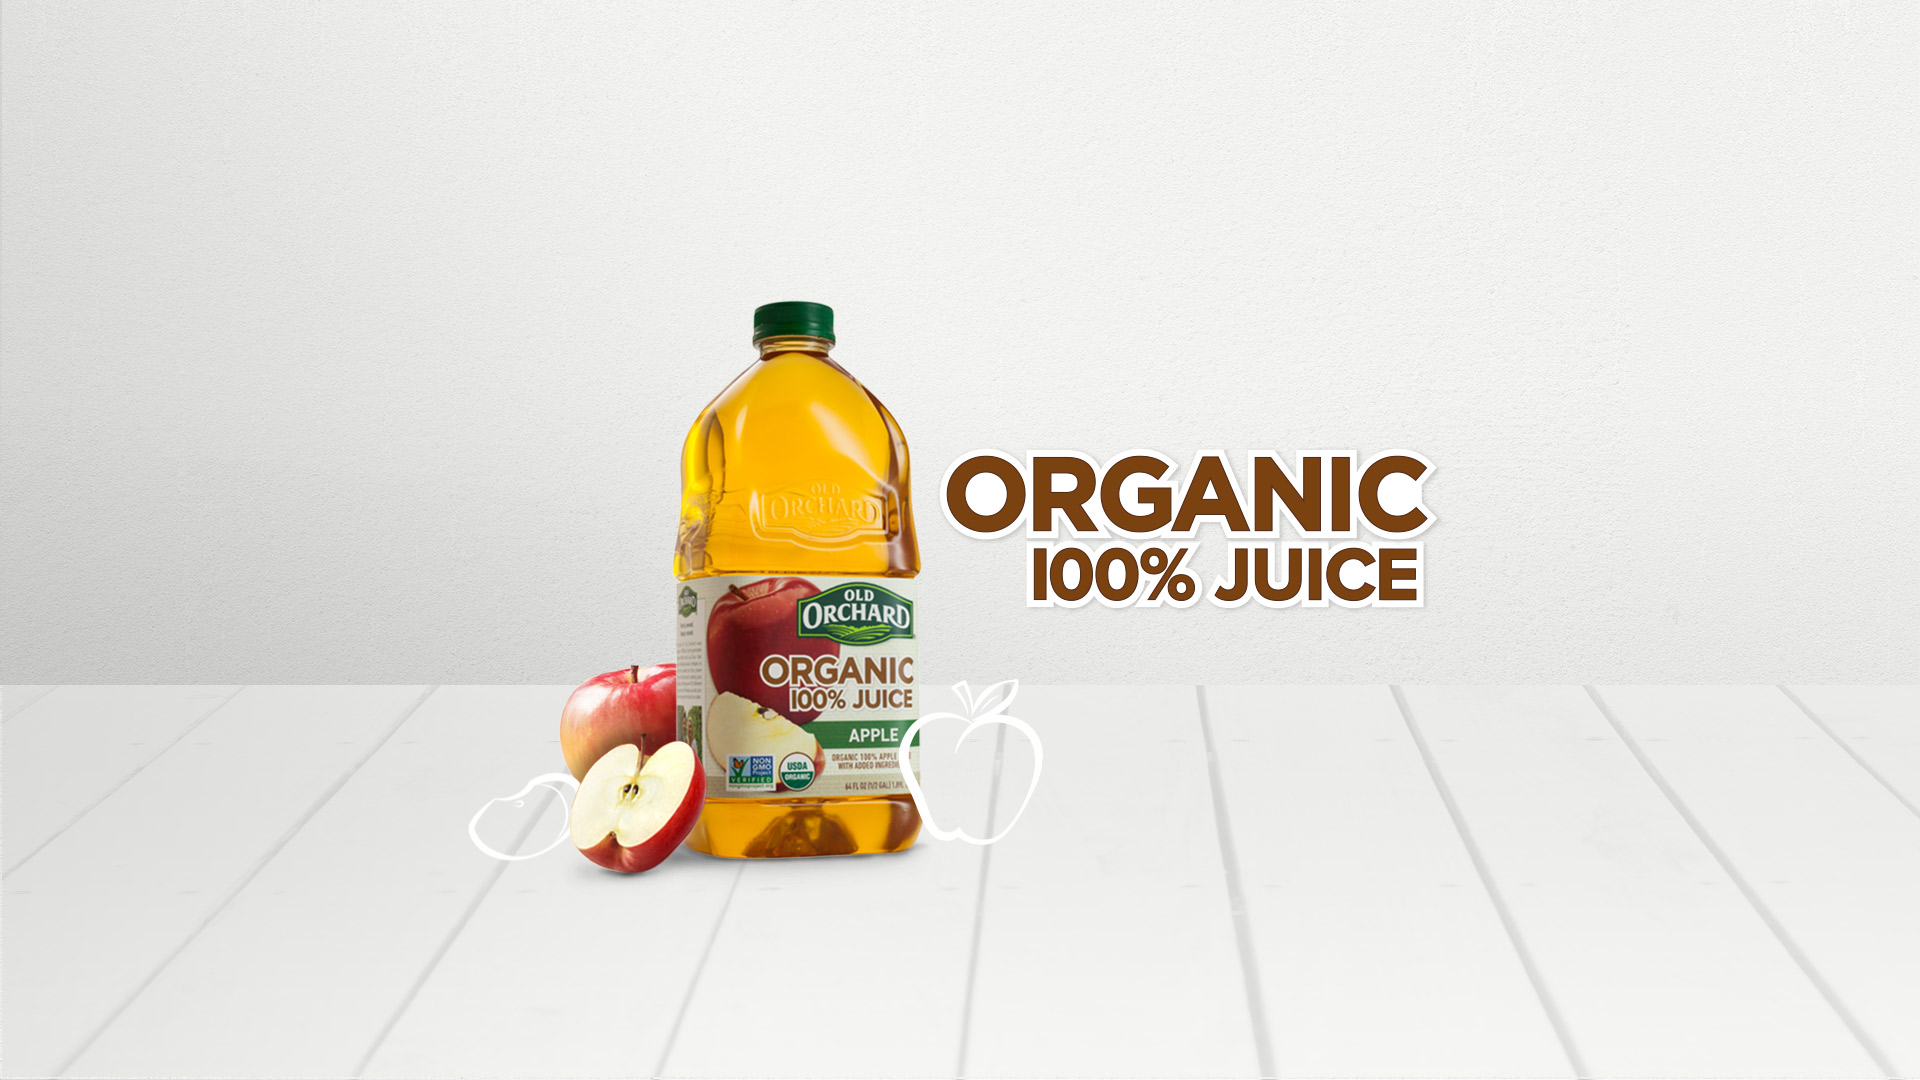 Juicy Juice Organics Apple Juice 100% Organic Apple Juice, 8 ct